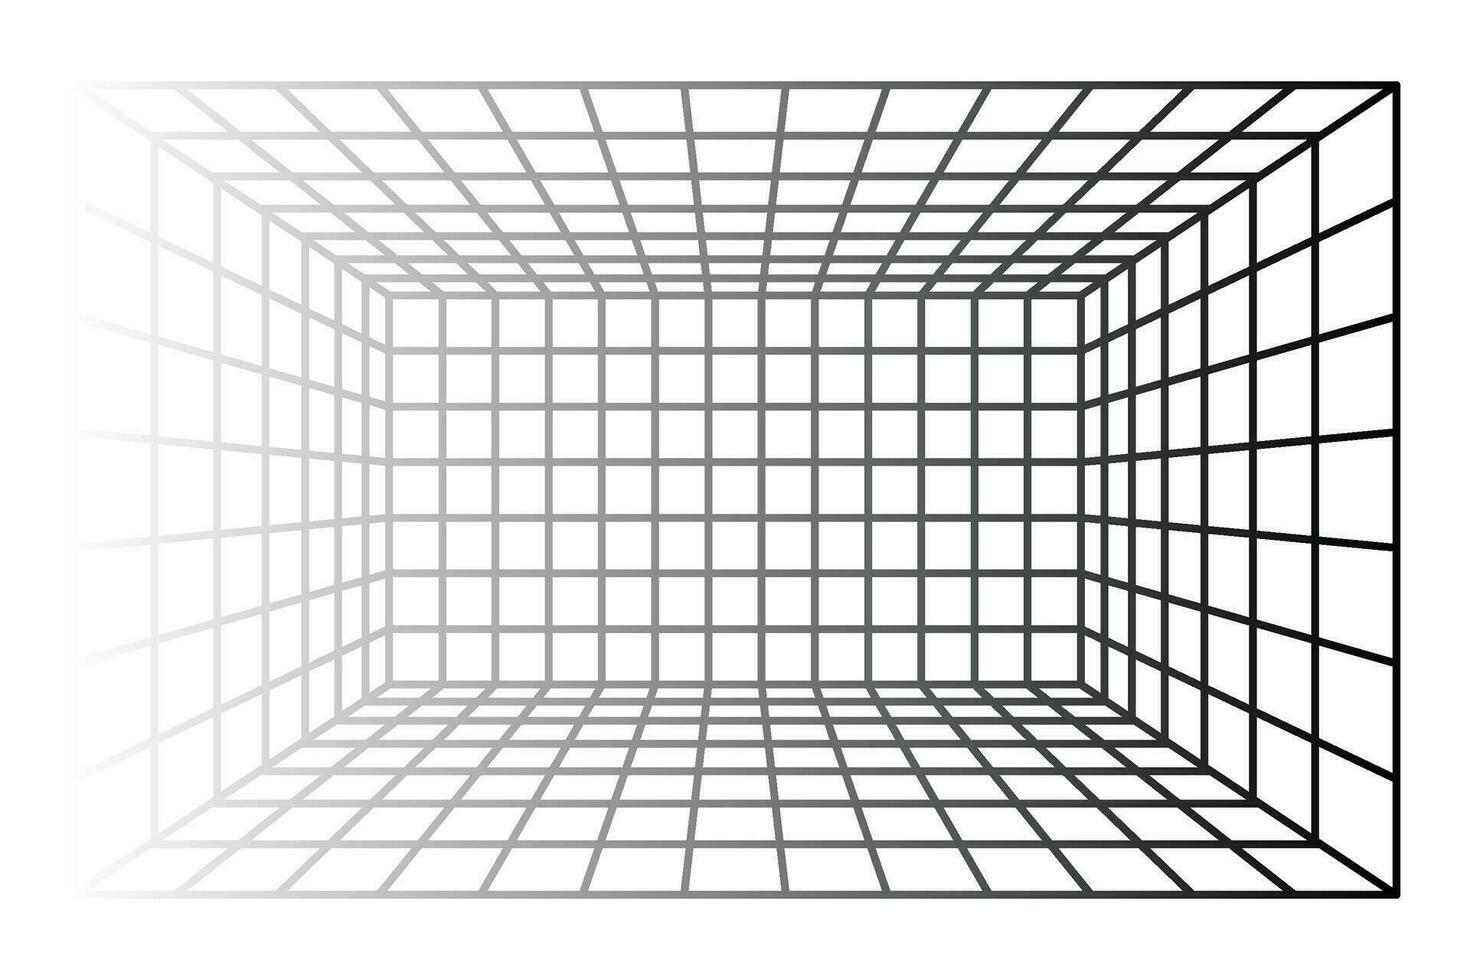 perspectief rooster kamer achtergrond vector illustratie.